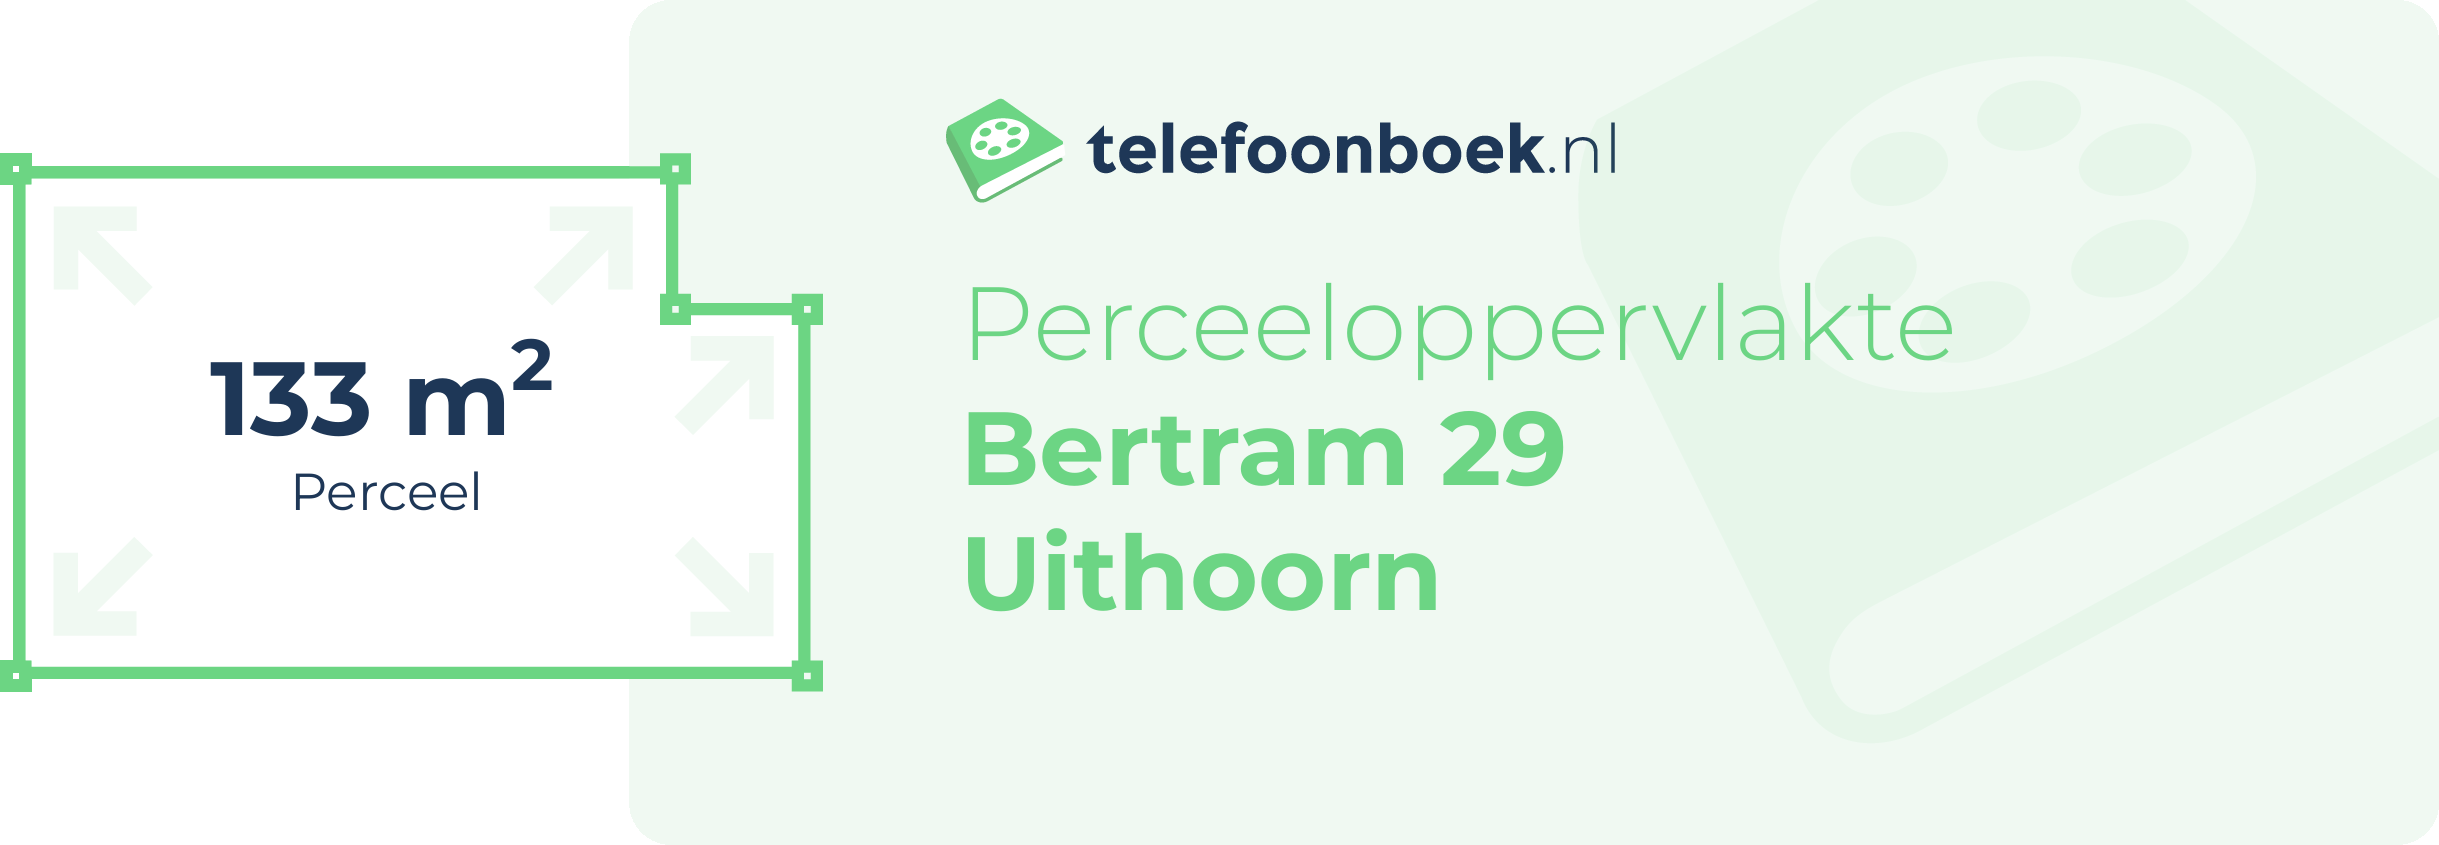 Perceeloppervlakte Bertram 29 Uithoorn